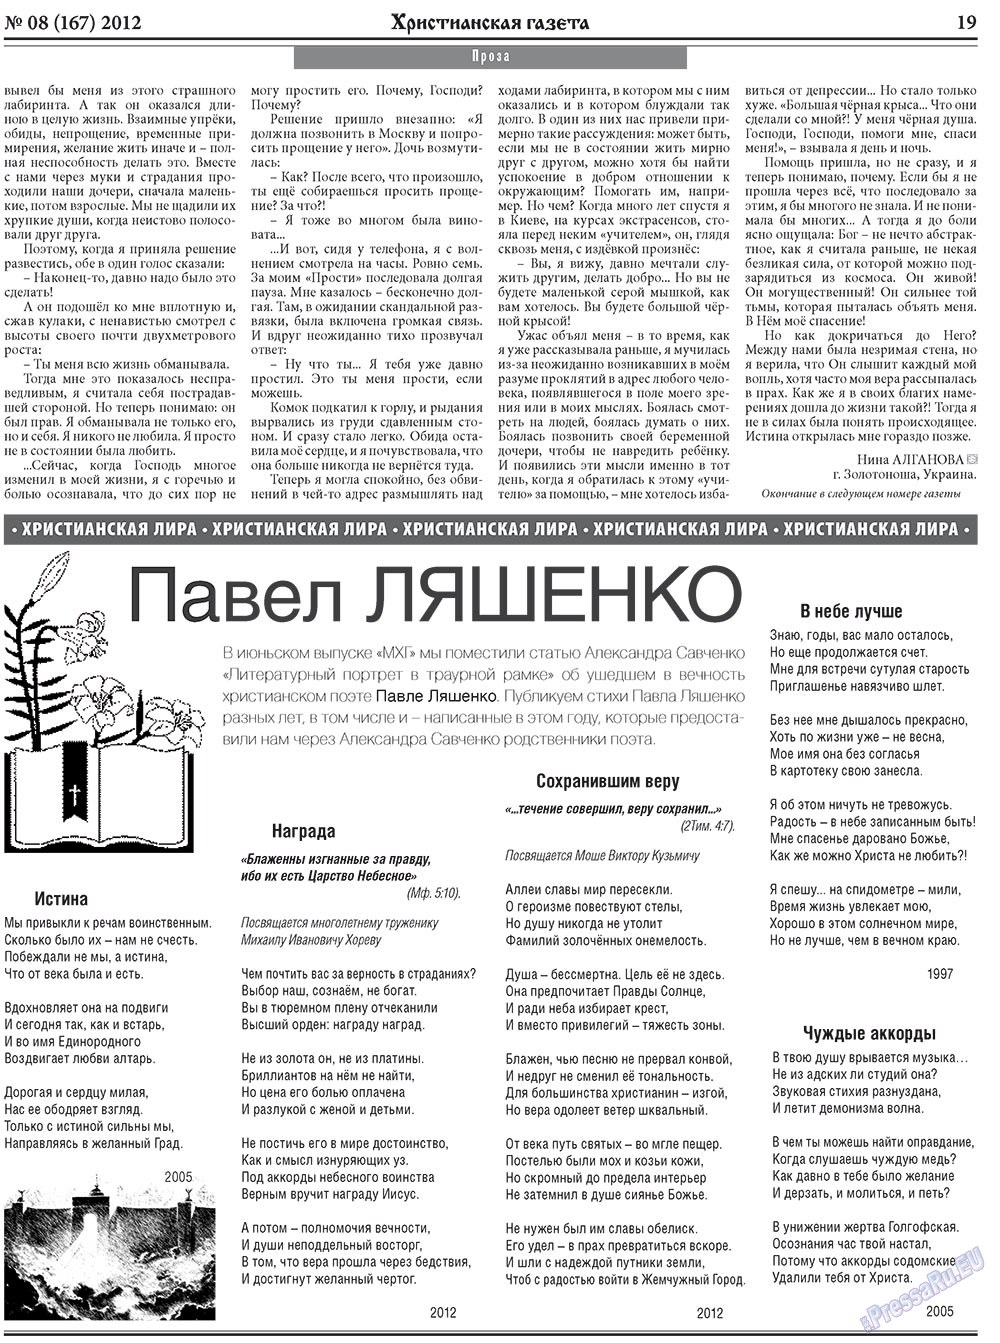 Христианская газета, газета. 2012 №8 стр.27